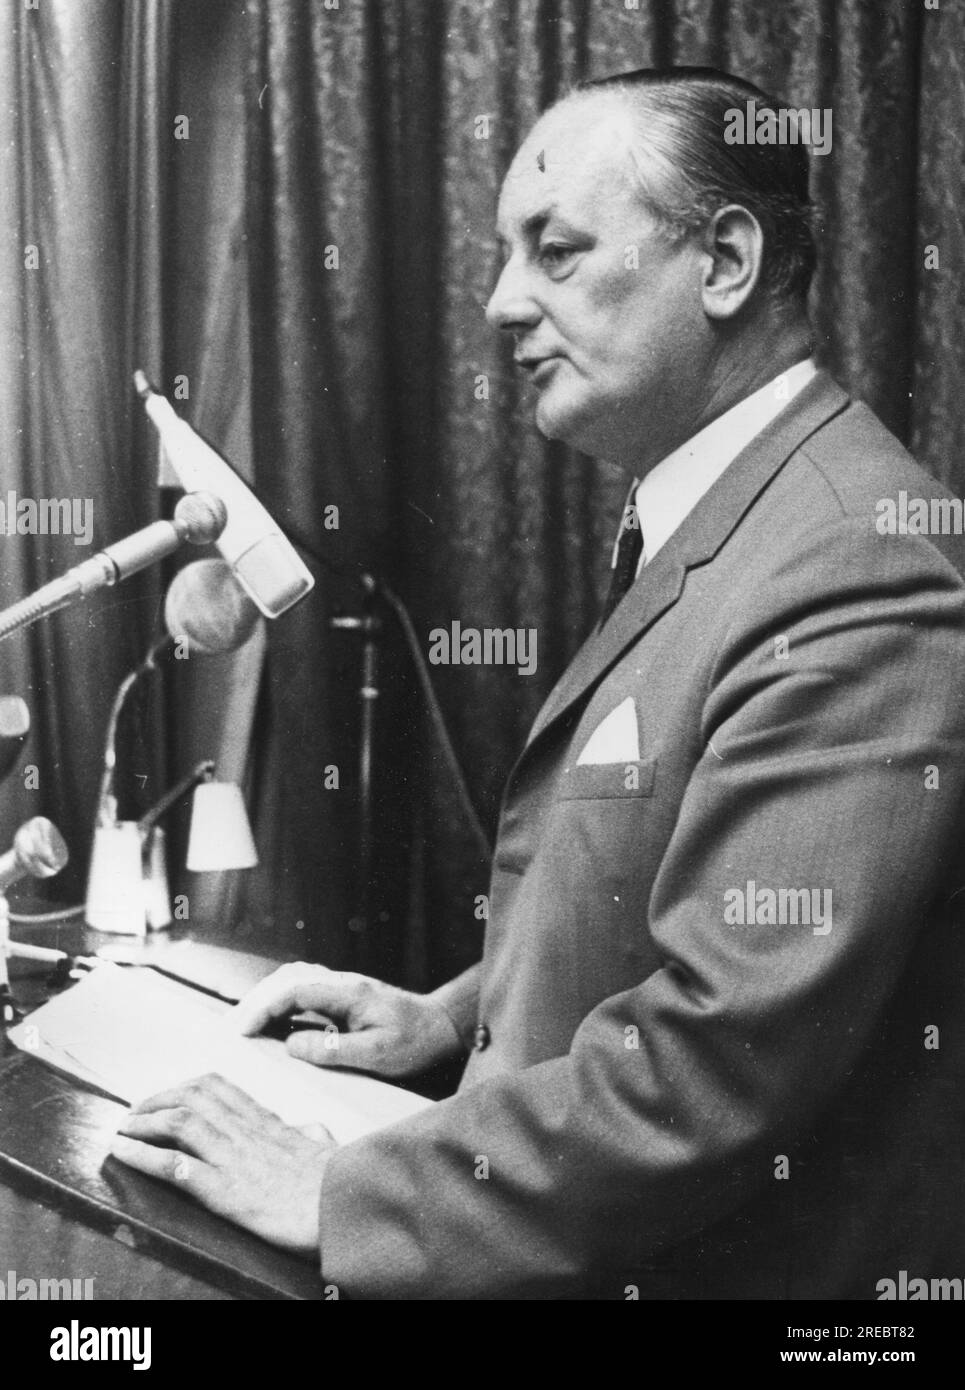 Thadden, Adolf von, 7.7.1921 - 16.7,1996, politico tedesco (Partito Nazionaldemocratico di Germania), ADDITIONAL-RIGHTS-CLEARANCE-INFO-NOT-AVAILABLE Foto Stock